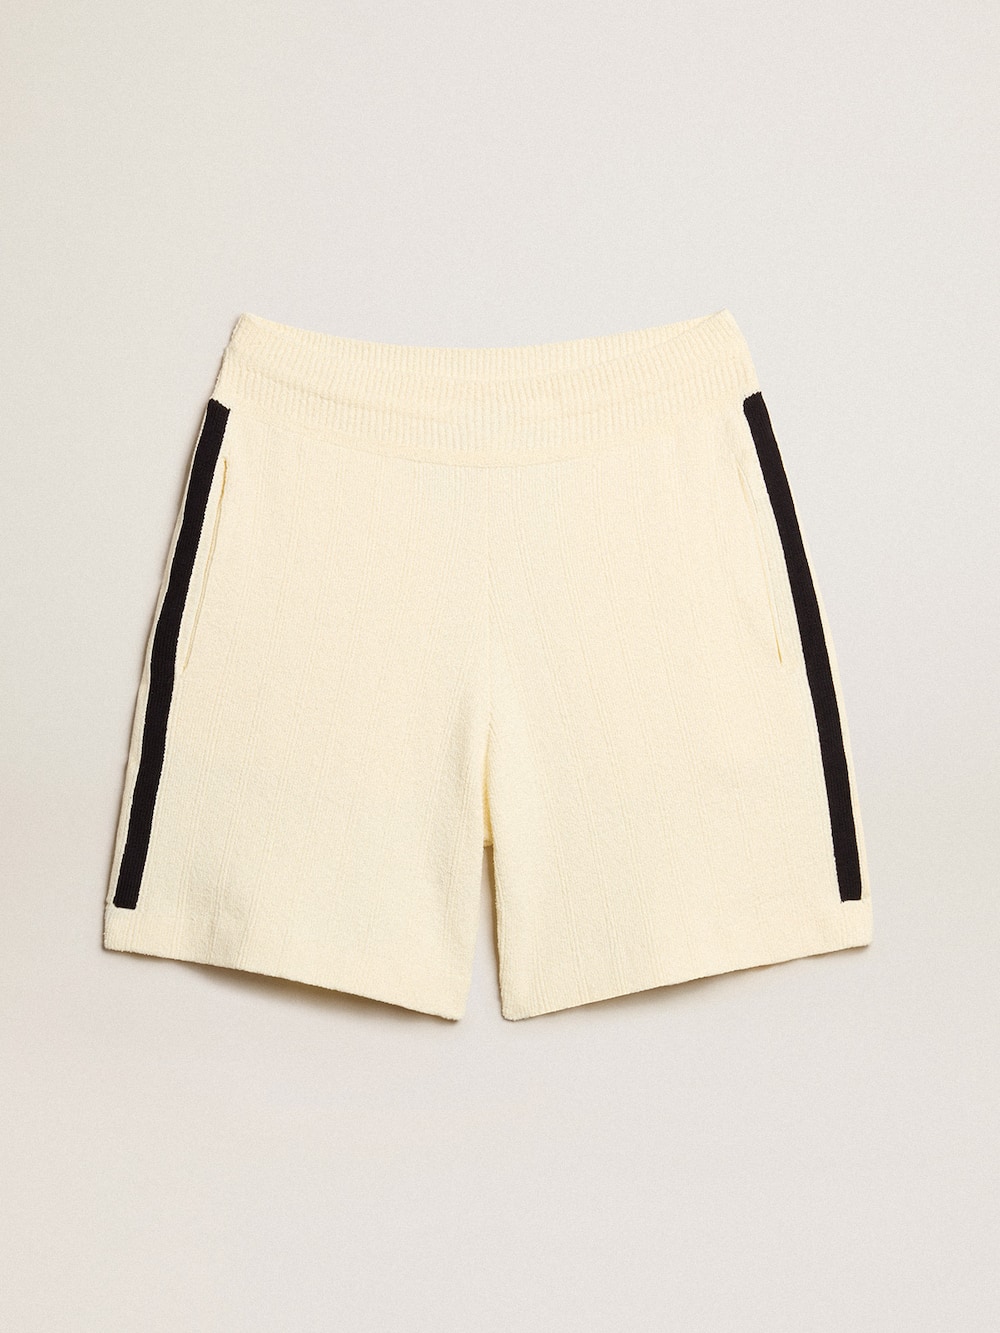 Golden Goose - Pantalón corto de mujer color blanco antiguo con tejido acanalado azul en los lados in 